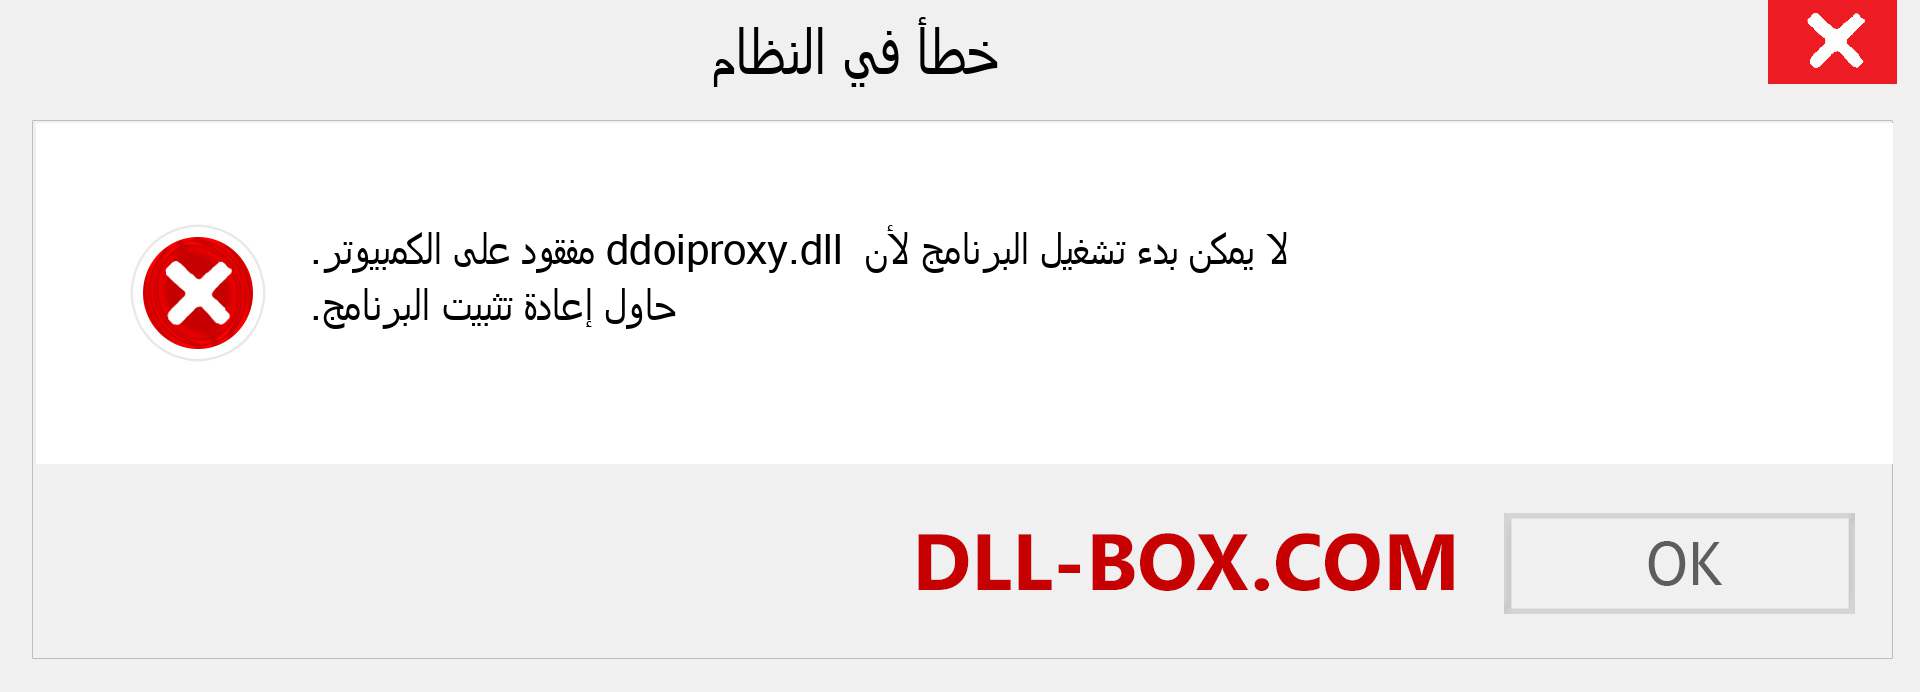 ملف ddoiproxy.dll مفقود ؟. التنزيل لنظام التشغيل Windows 7 و 8 و 10 - إصلاح خطأ ddoiproxy dll المفقود على Windows والصور والصور